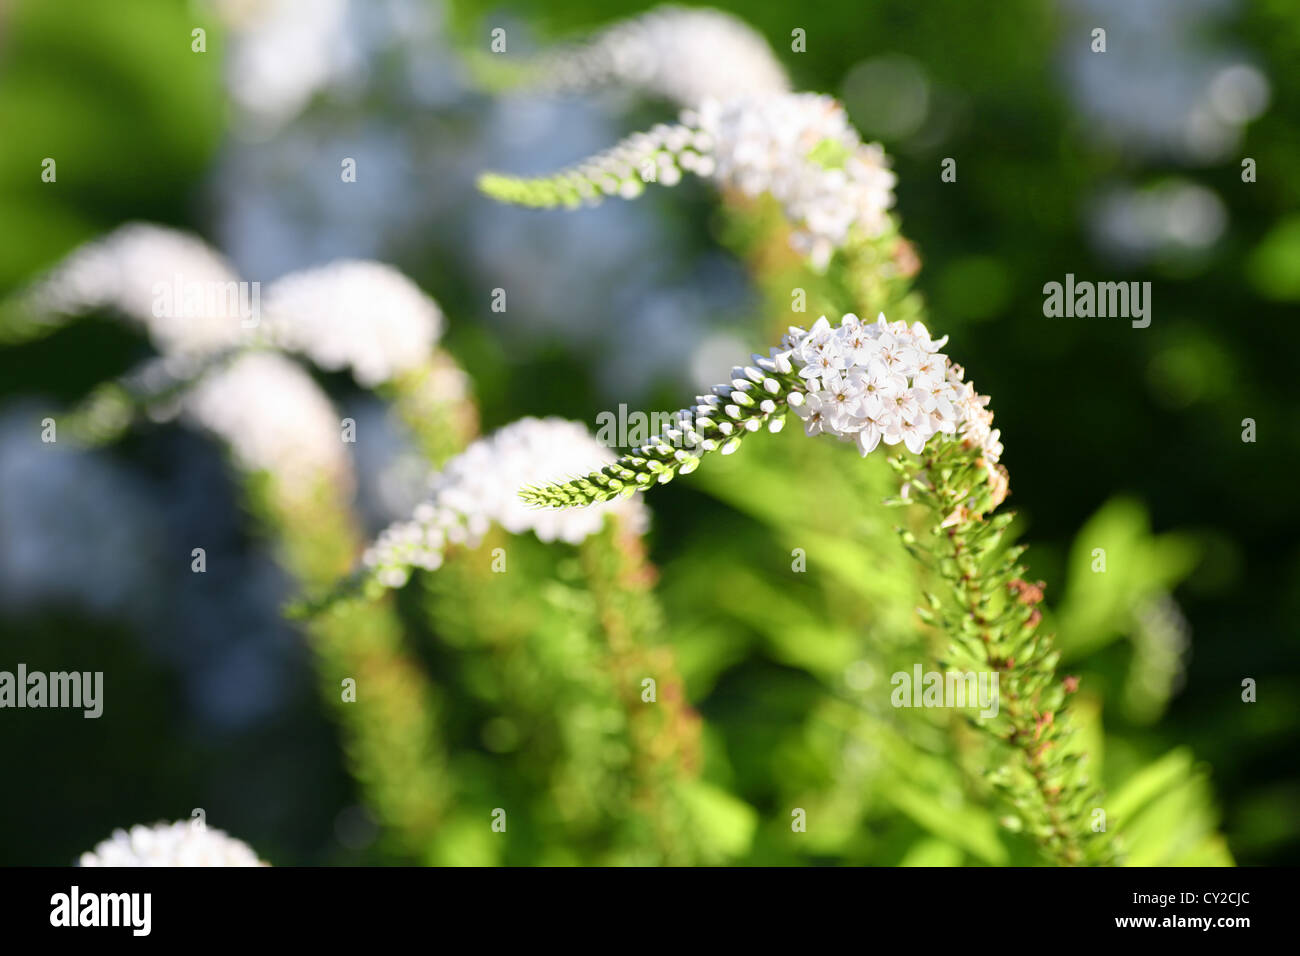 Lysimachia clethroides or Gooseneck flower, a perennial garden favourite. Stock Photo